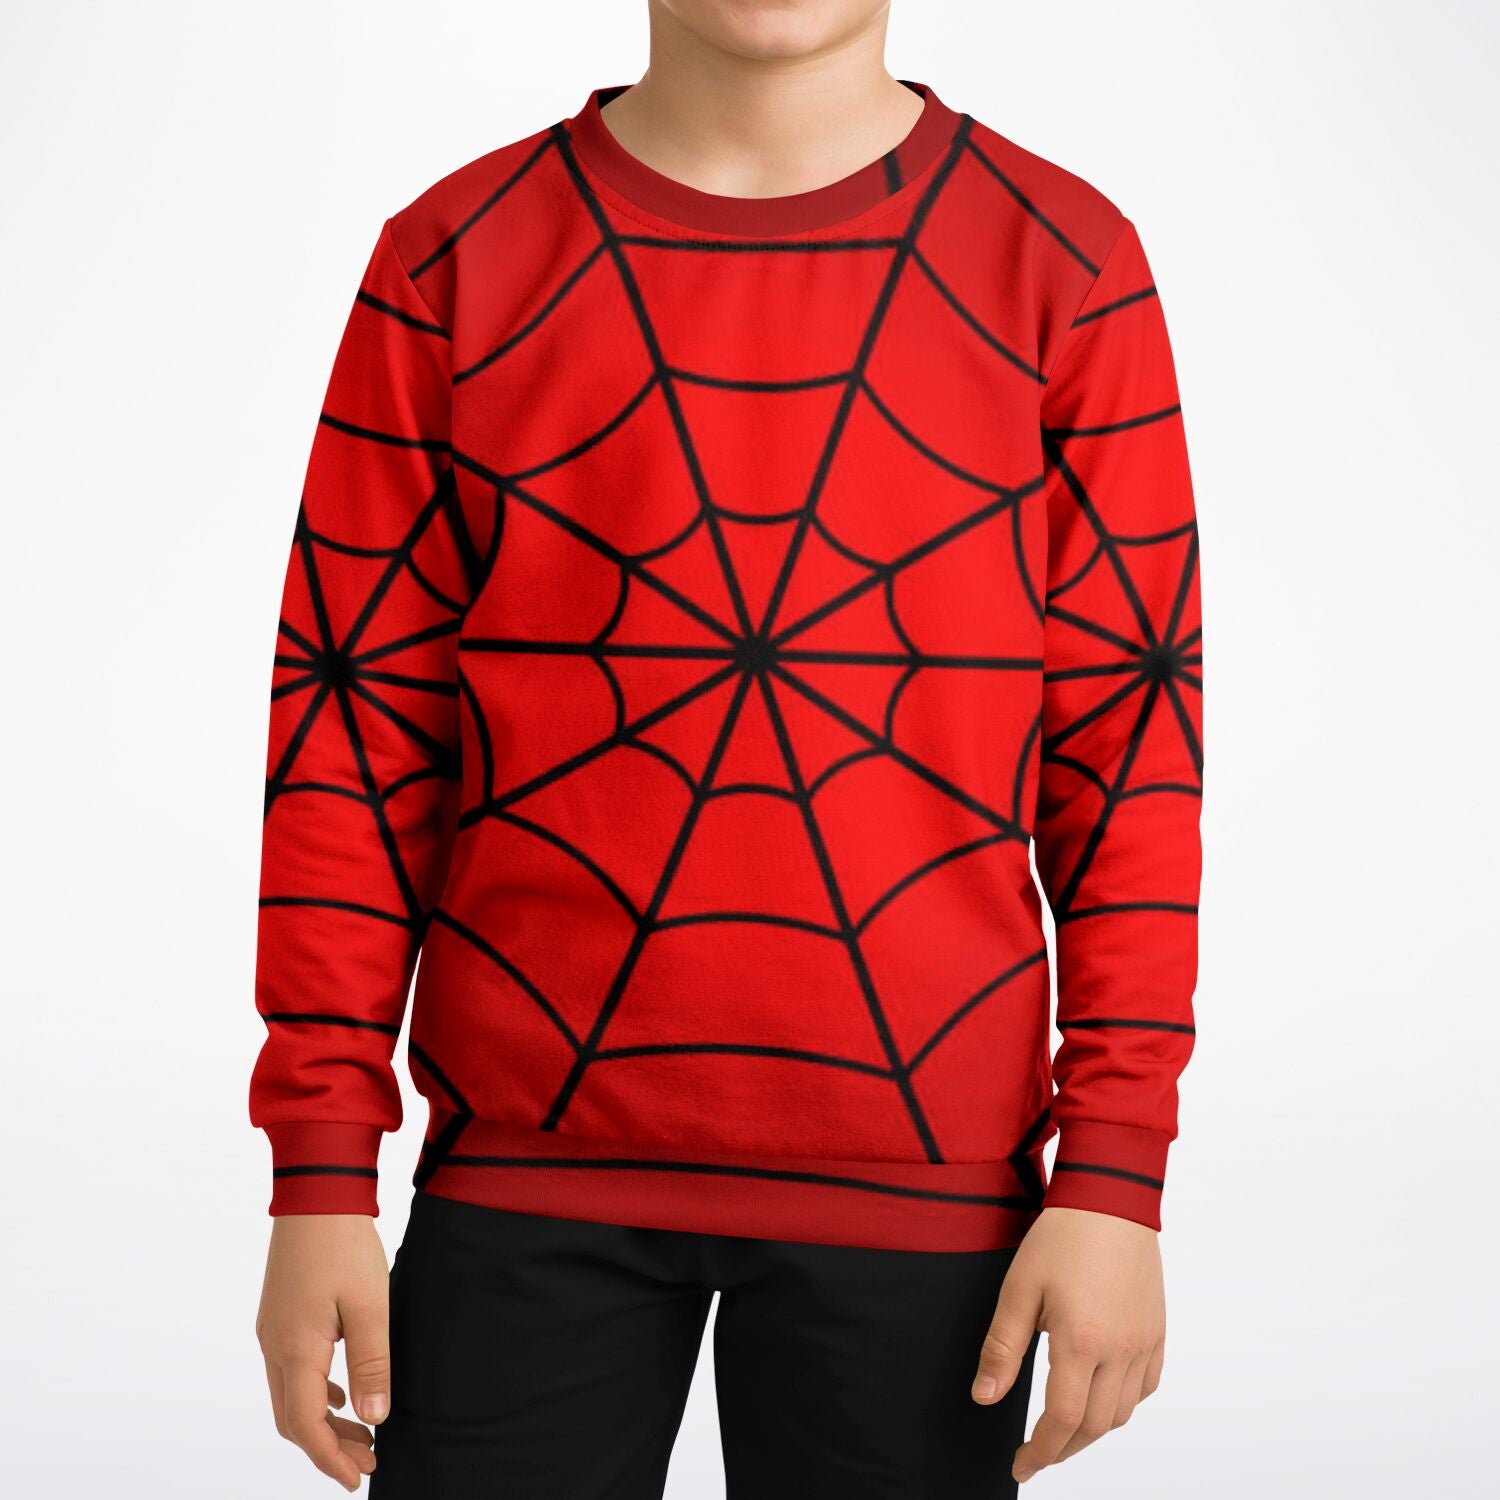 Crimson Spider Web Kids/Youth Sweatshirt